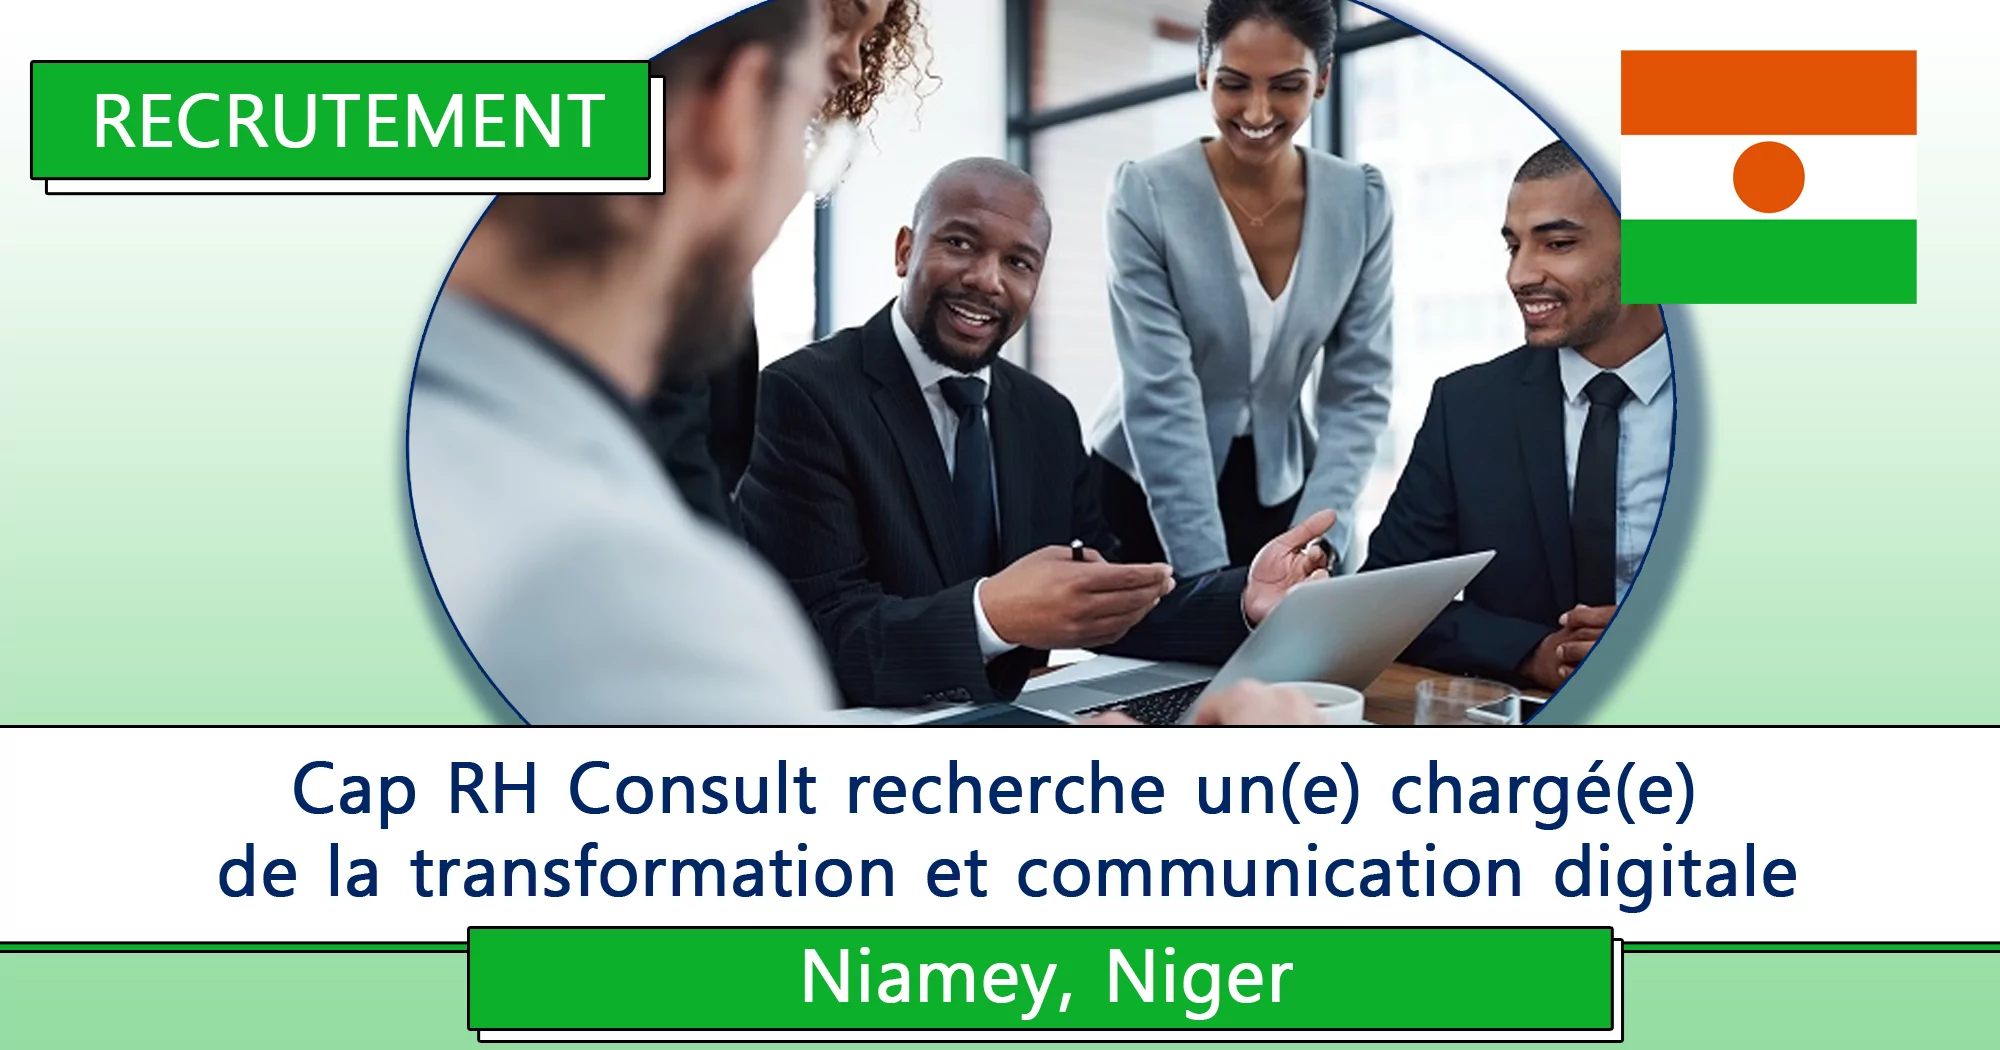 Cap RH Consult recherche un(e) chargé(e) de la transformation et communication digitale, Niamey, Niger